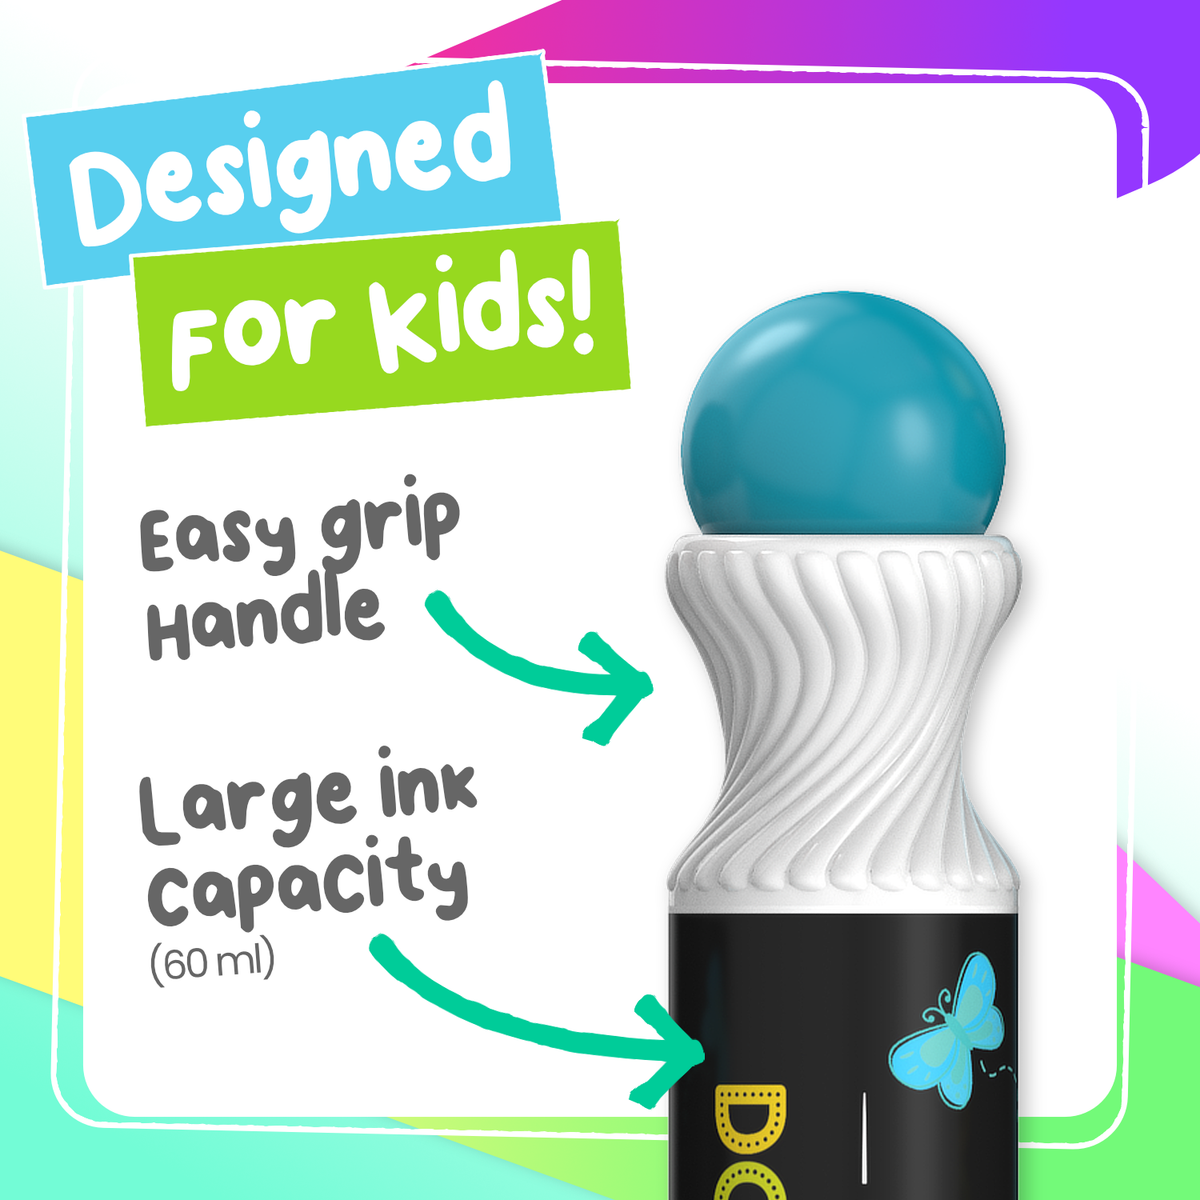 Bundle for Kids: 10 Neon + 8 Shimmer Washable Dot Markers